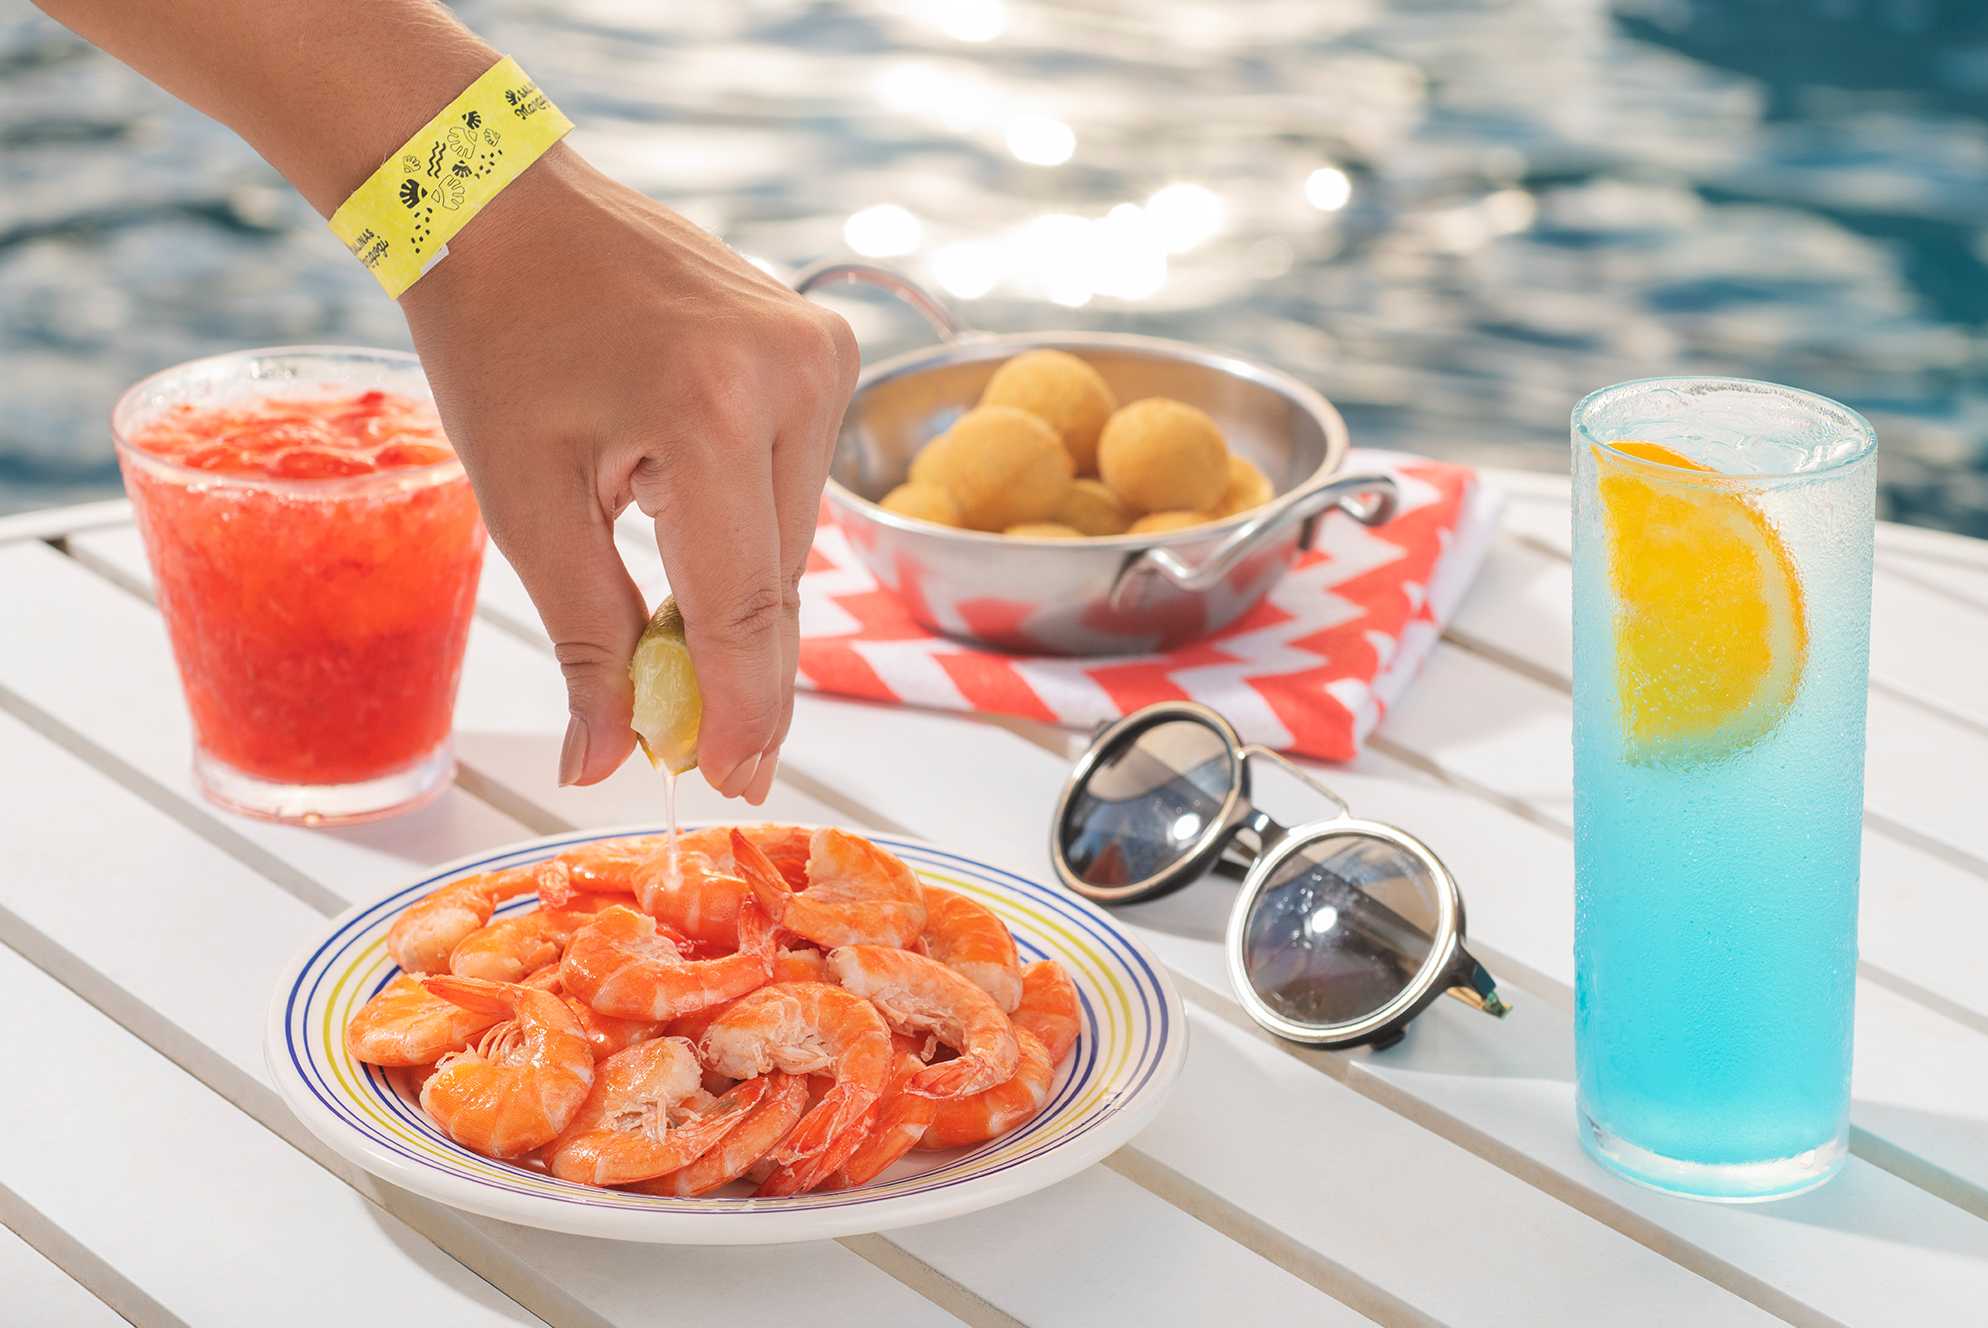 A foto captura um momento culinário ao ar livre, com uma mão feminina espremendo uma fatia de limão sobre uma porção de camarões em um prato decorado. Há também uma panela de coxinhas e um guardanapo xadrez. Óculos de sol repousam ao lado.